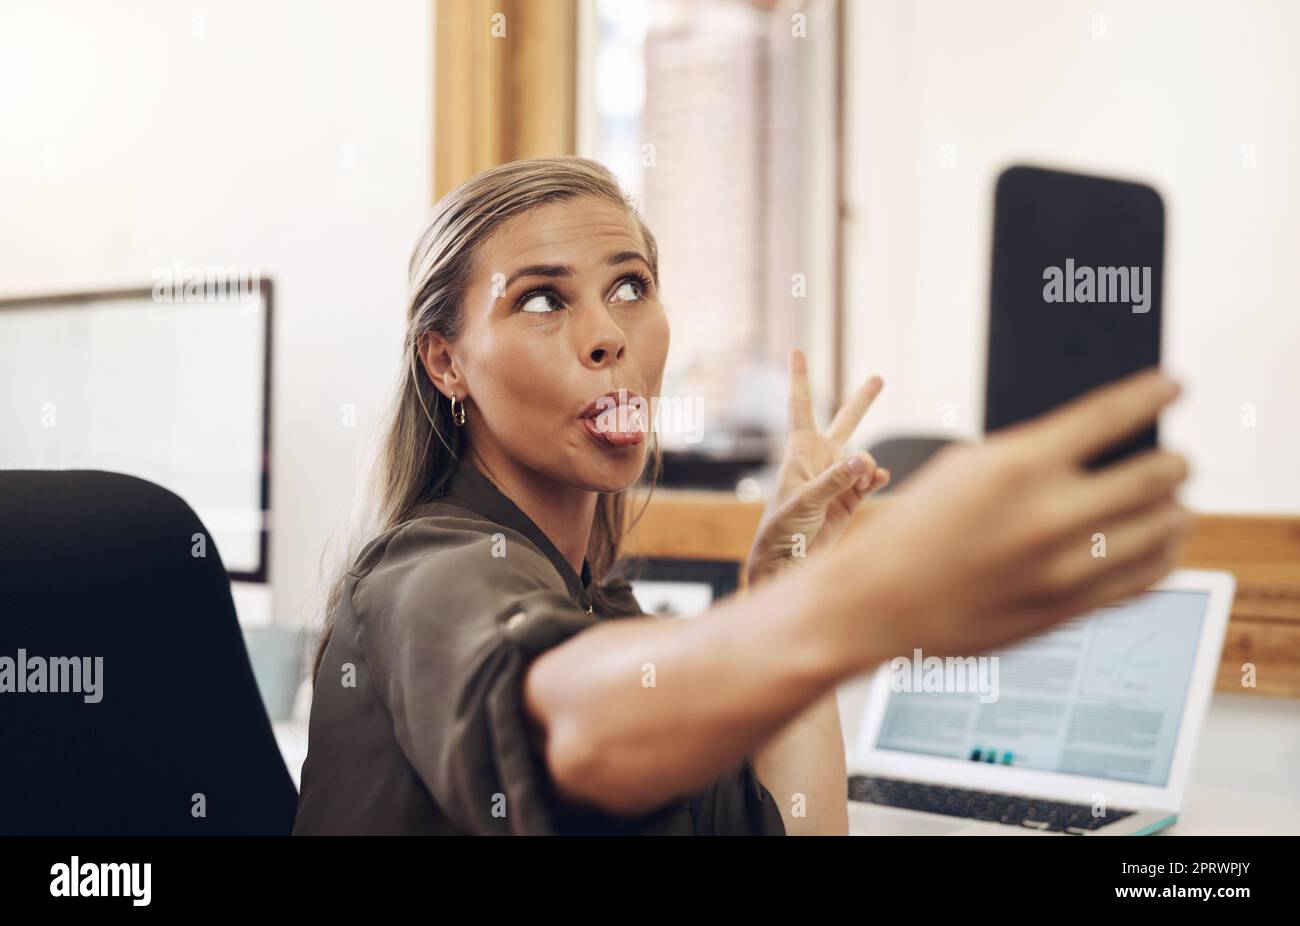 Nur ein bisschen Selfie-Sillness. Eine junge Geschäftsfrau ragt aus der Zunge, während sie Selfies in einem Büro macht. Stockfoto